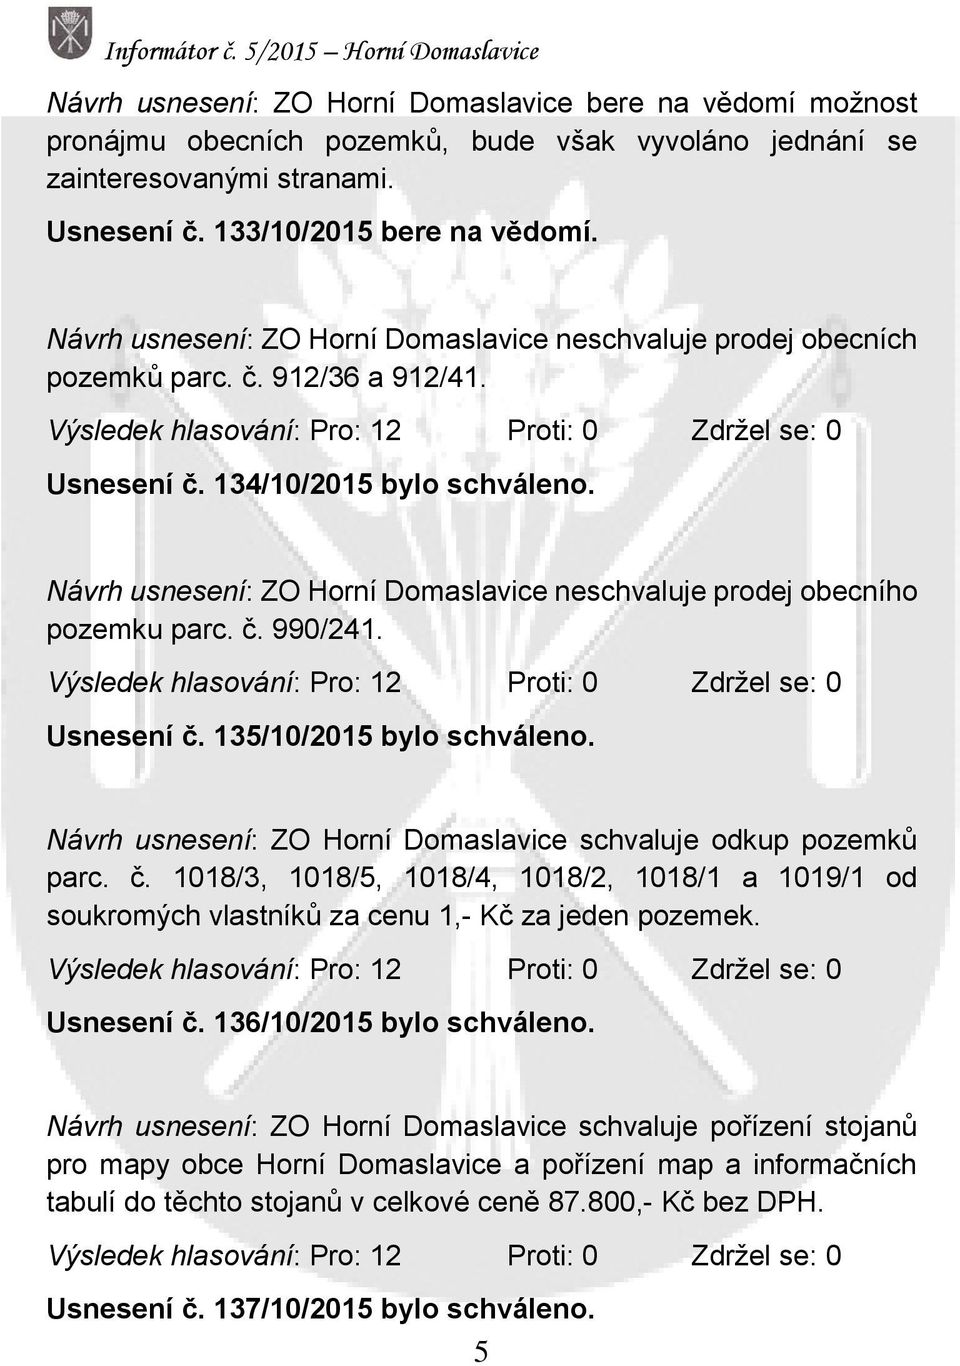 Návrh usnesení: ZO Horní Domaslavice neschvaluje prodej obecního pozemku parc. č. 990/241. Výsledek hlasování: Pro: 12 Proti: 0 Zdržel se: 0 Usnesení č. 135/10/2015 bylo schváleno.